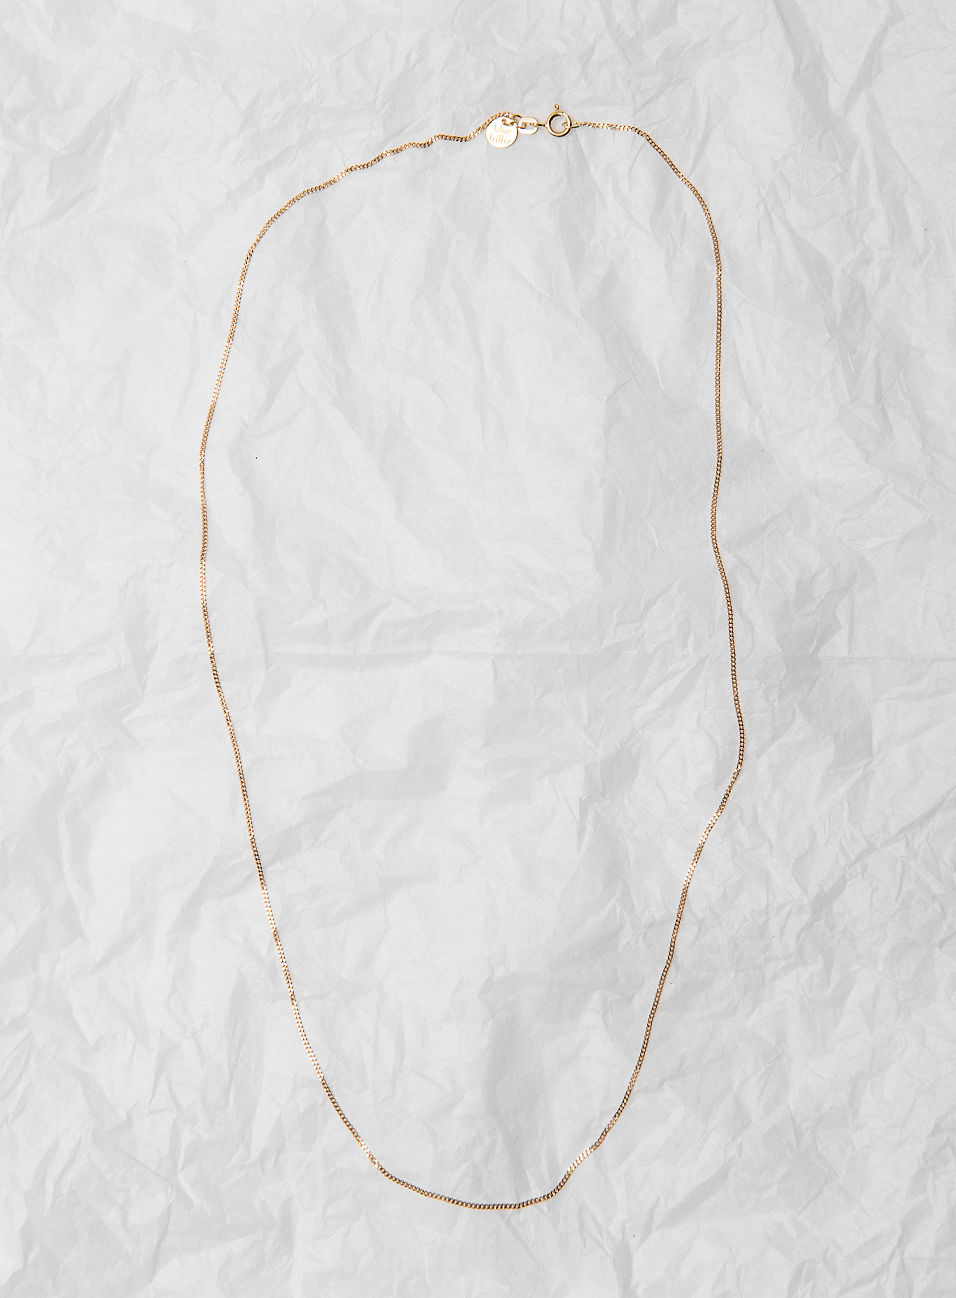 Thin plain chain 60 cm gold